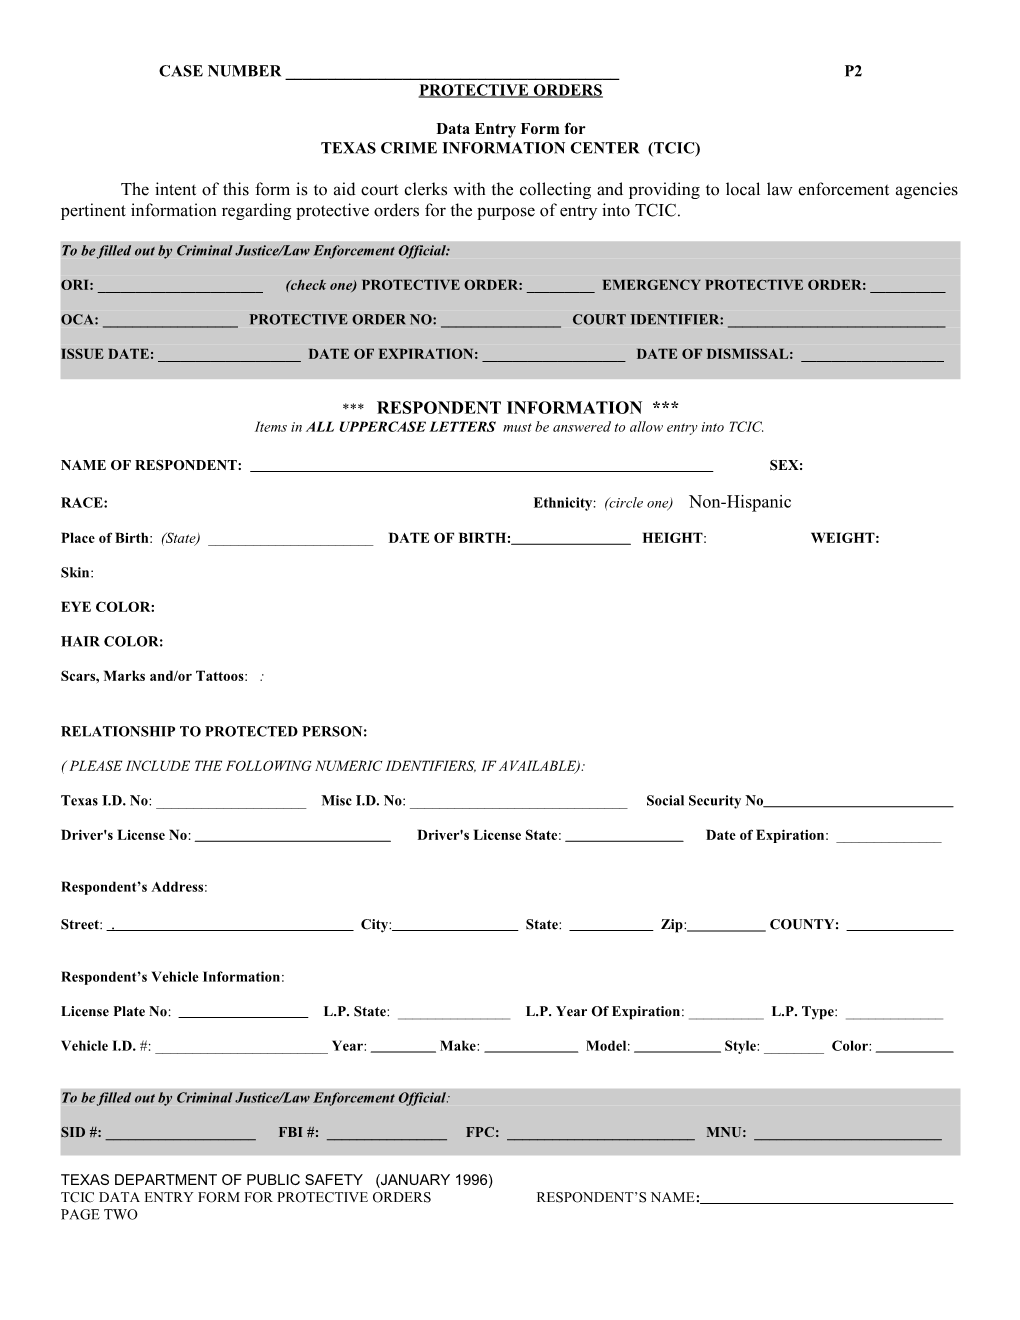 Civil Process Request: Service Form 29